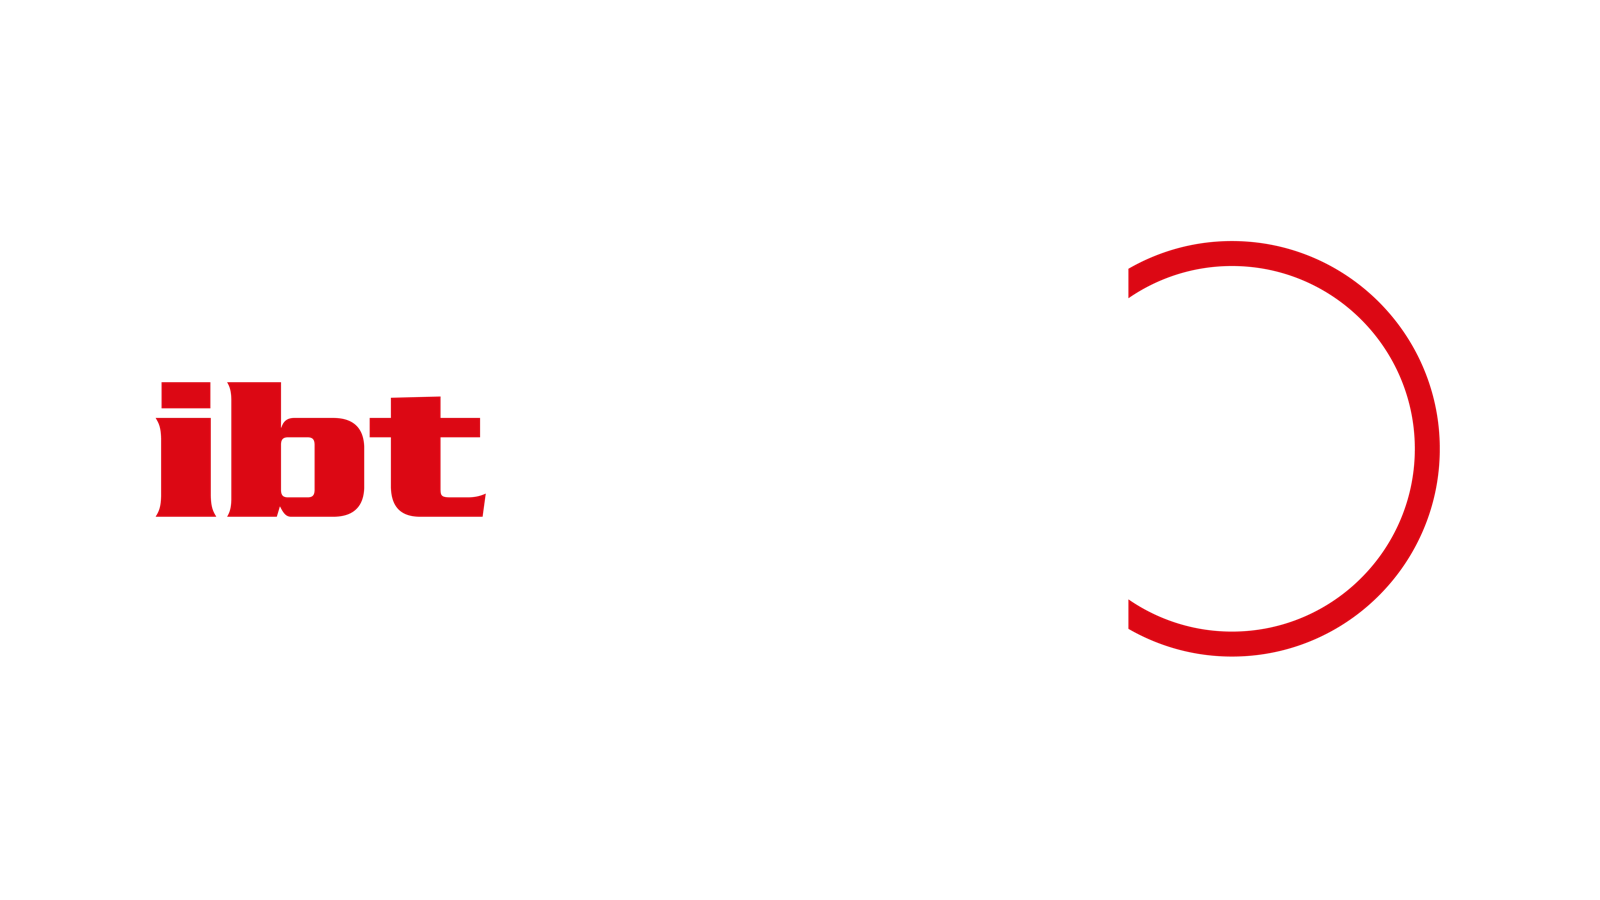 Logo_ibt_ACCOUNT_dein jobprofil_original_weisse Schrift_Zeichenfläche 1.png